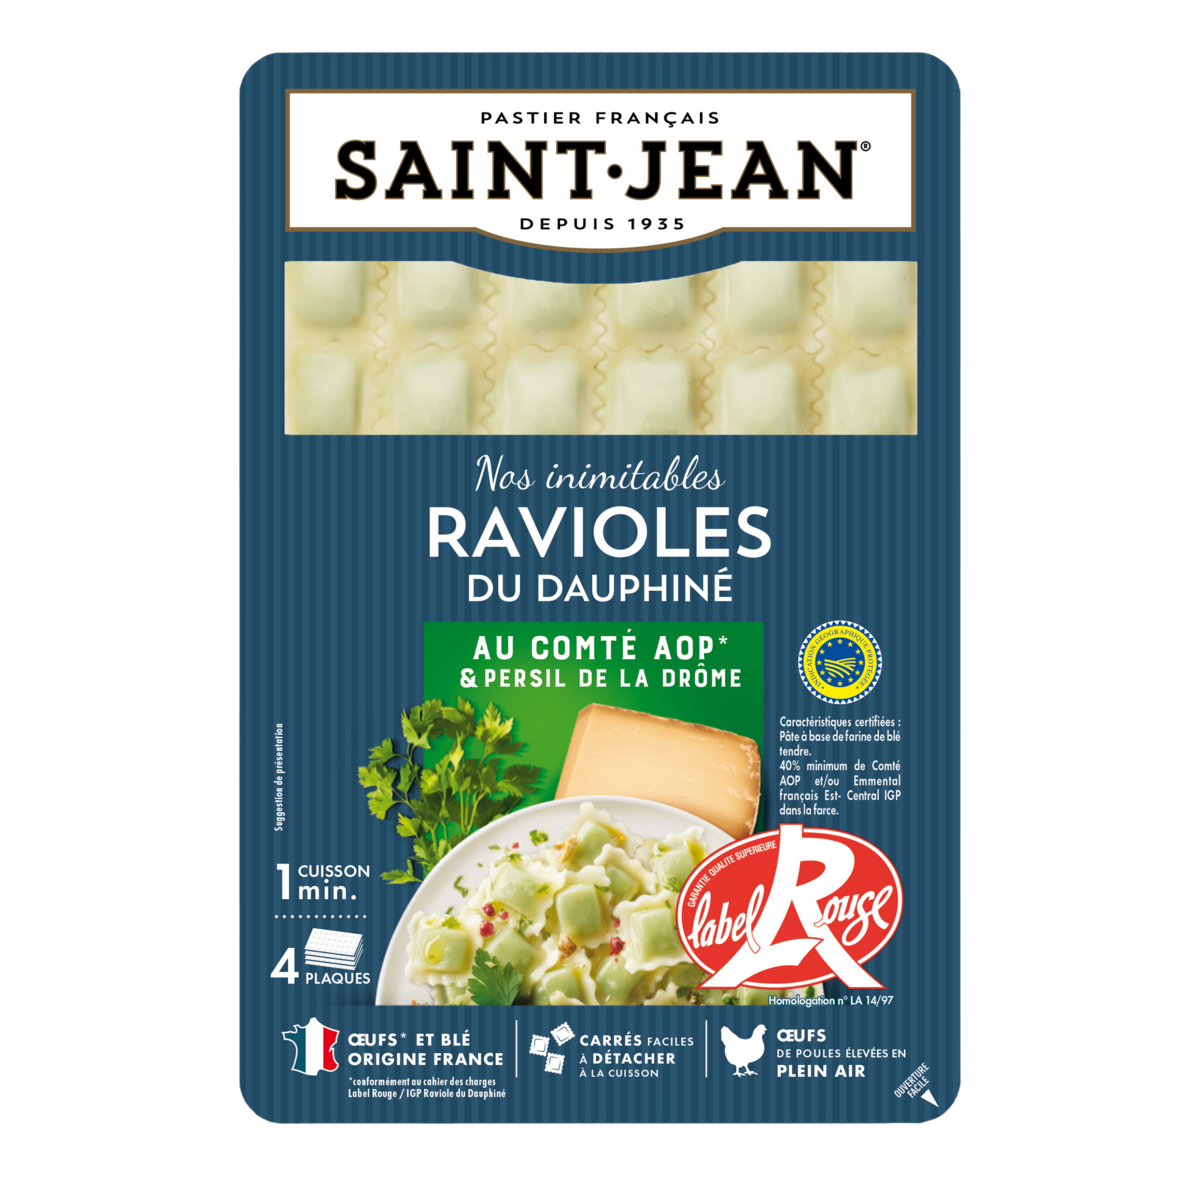 SAINT JEAN Ravioles du Dauphiné Label Rouge IGP 4 plaques 240 g